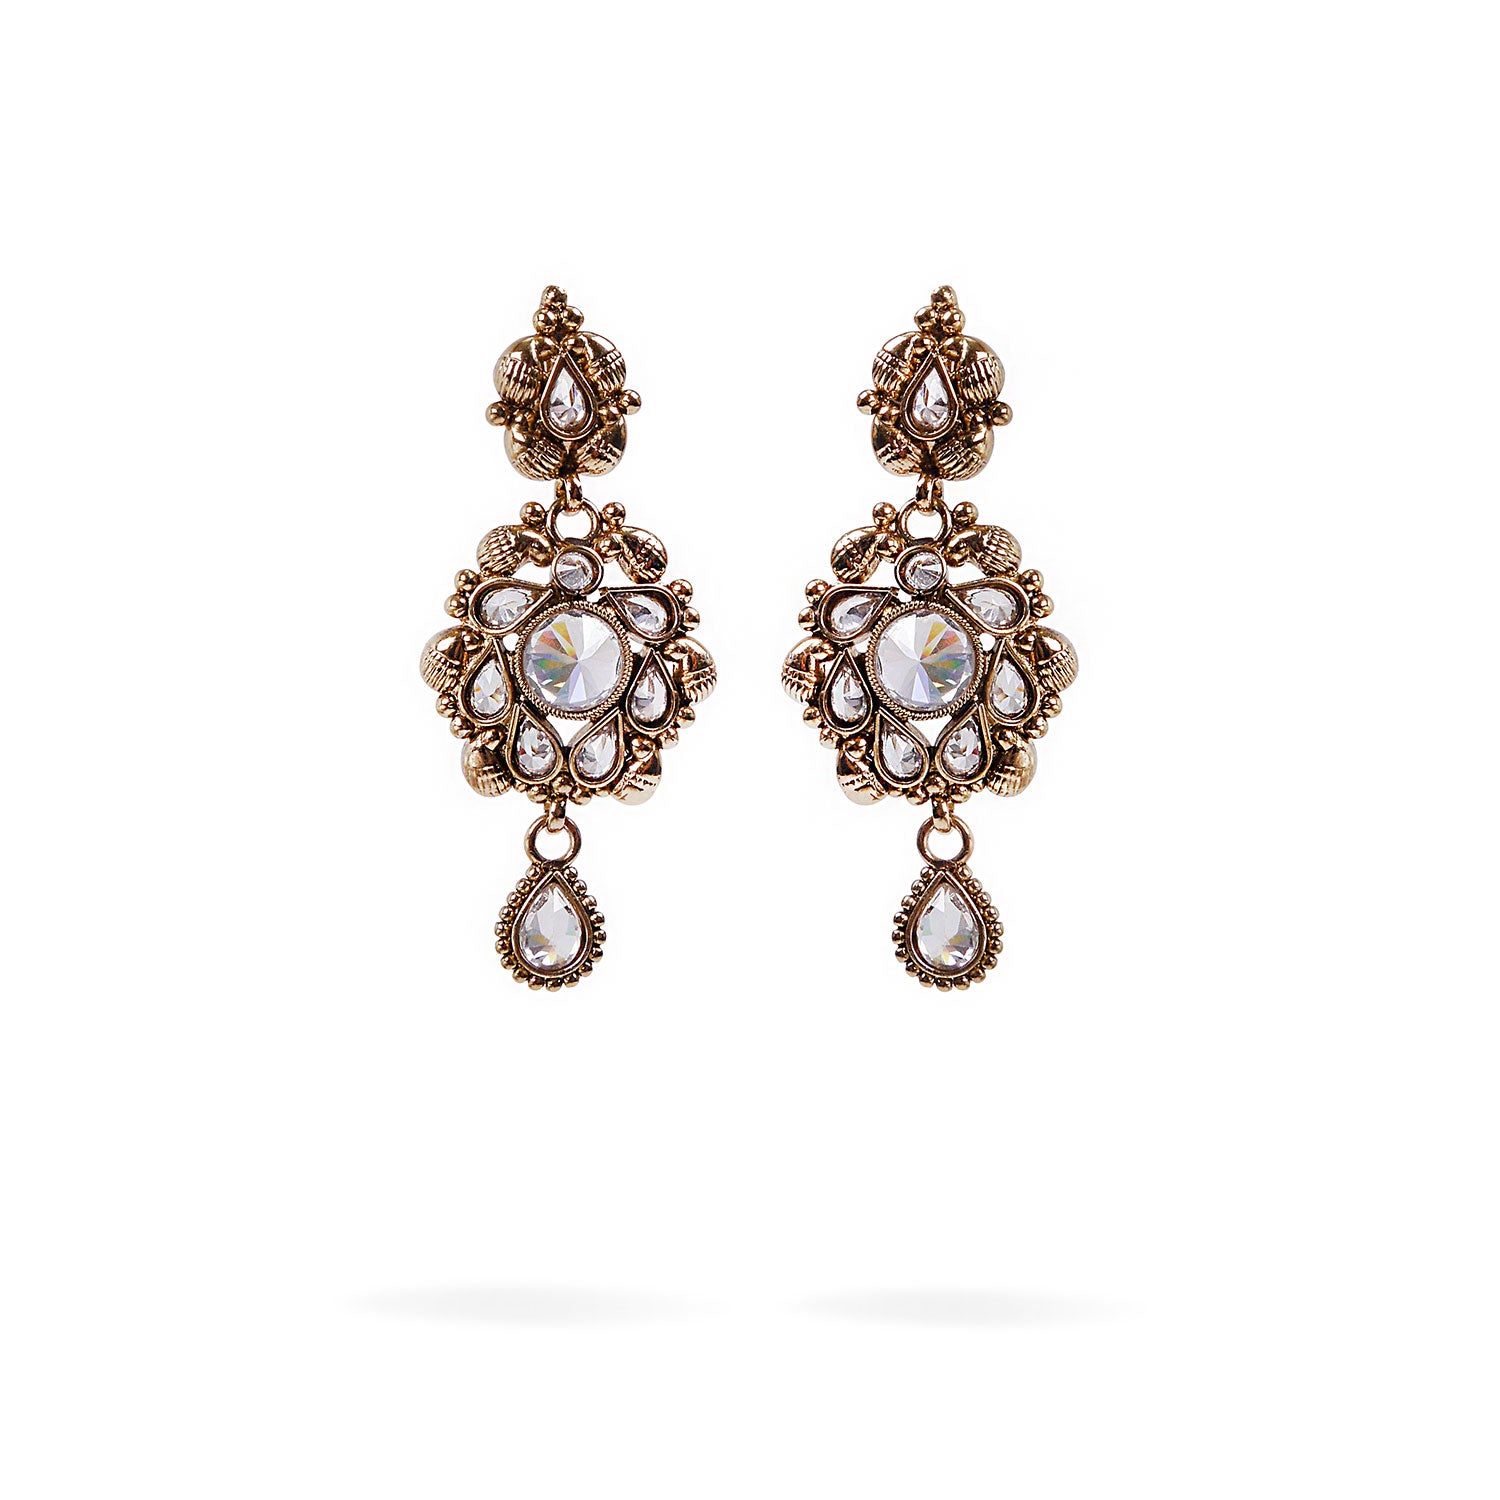 Kayla Earrings in Antique Gold